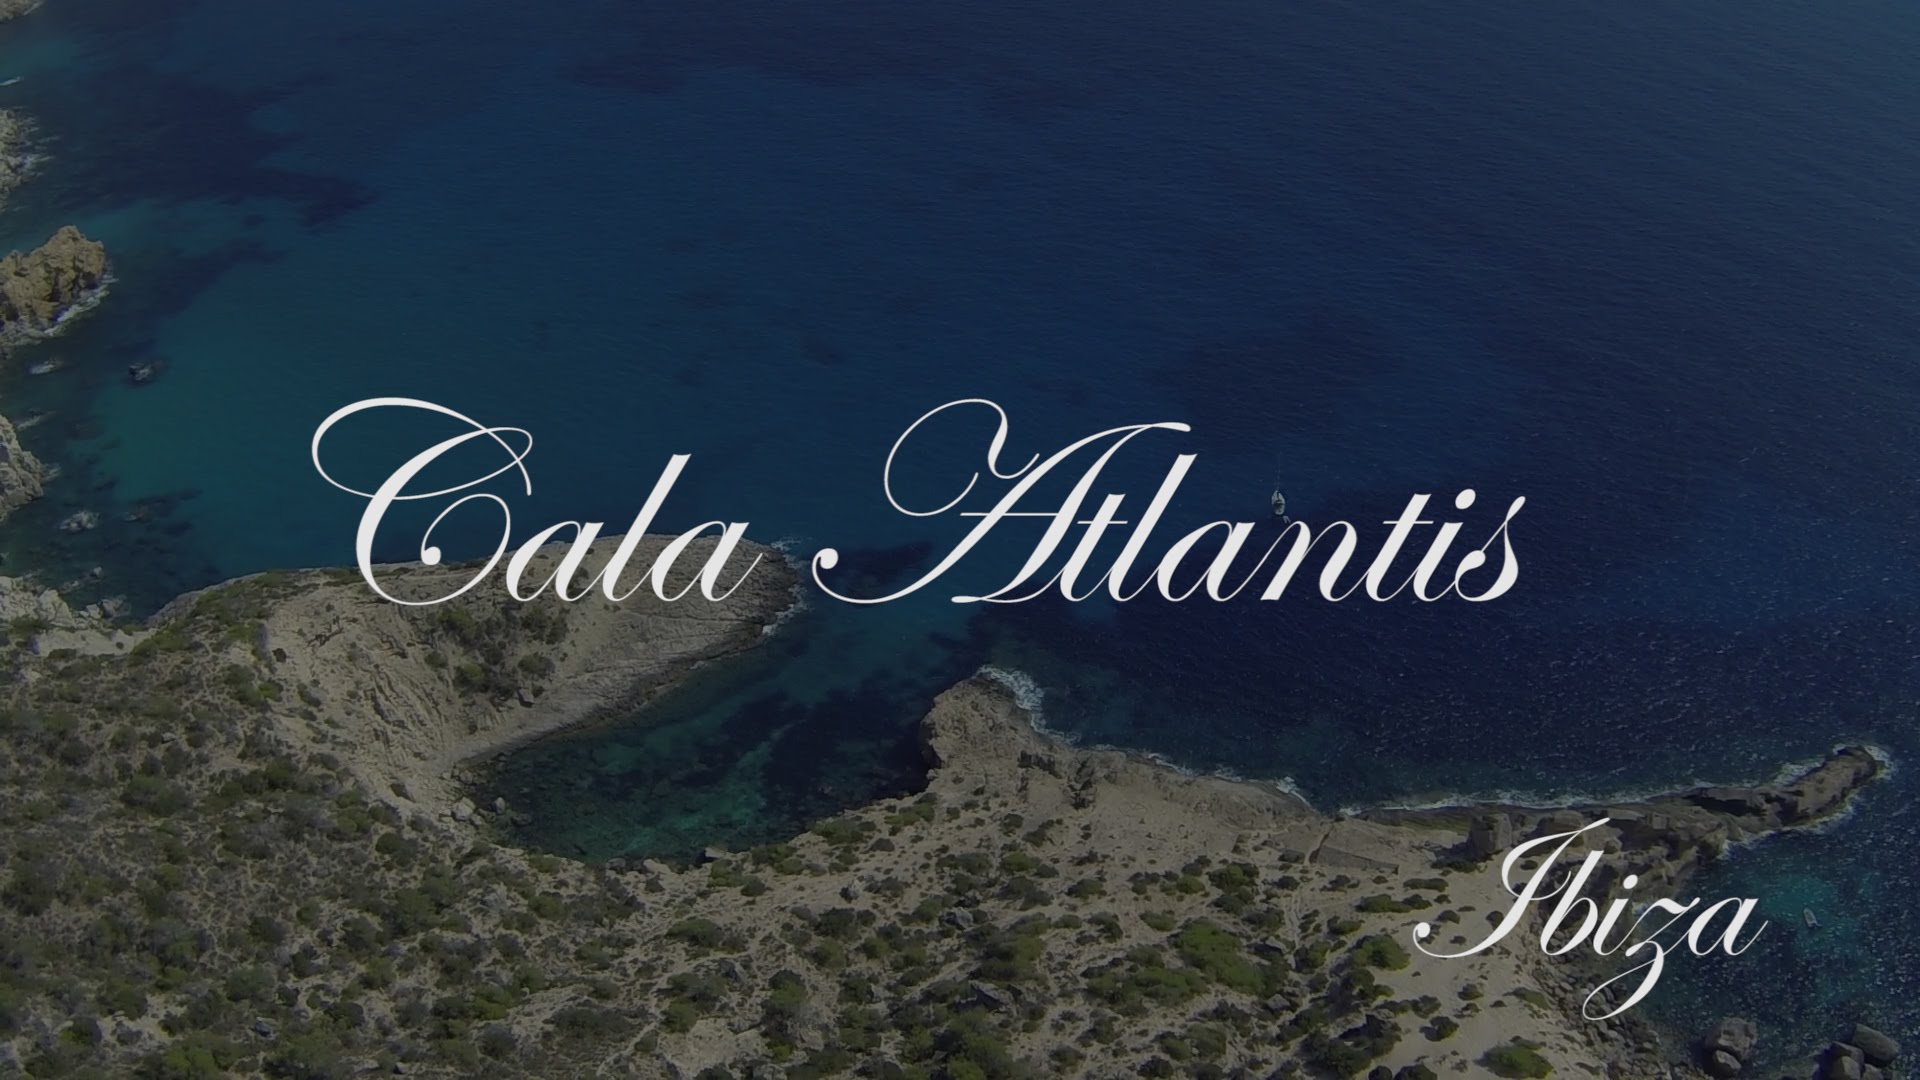 Cala Atlantis Ibiza